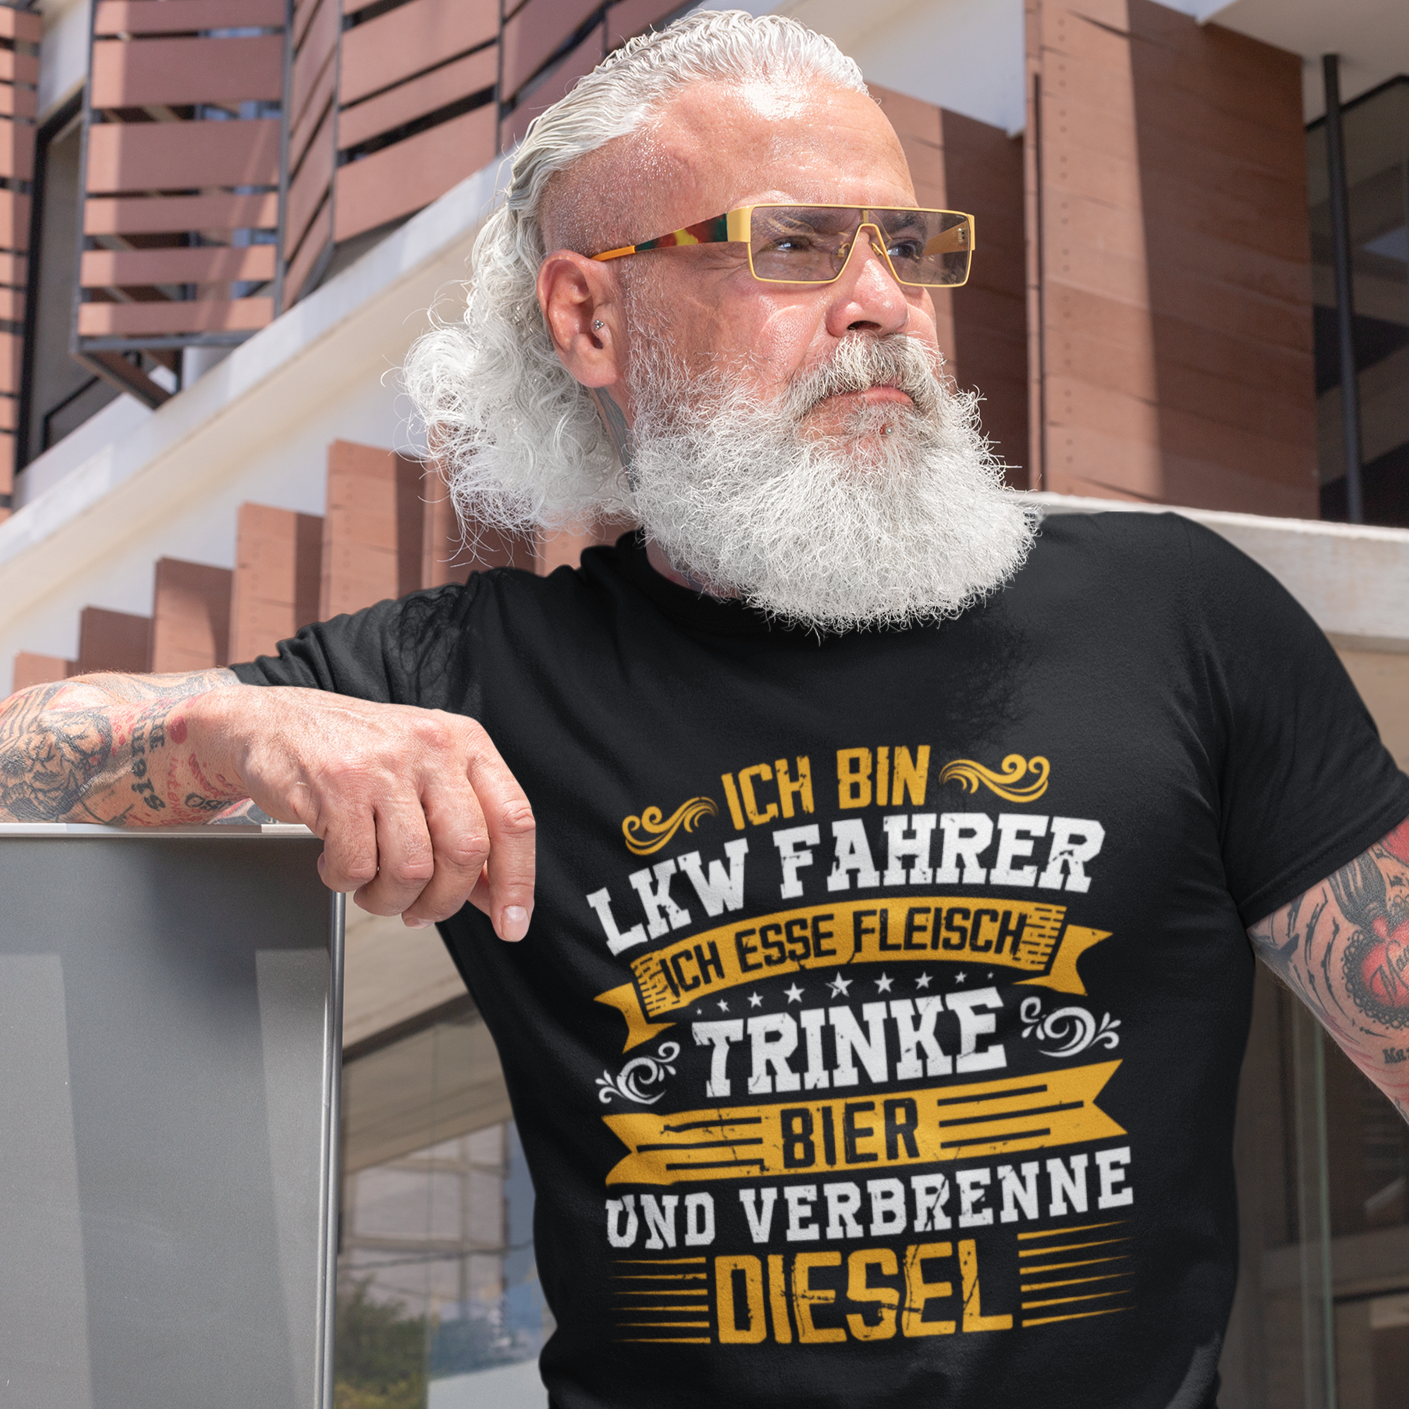 Verbrenne Diesel - T-Shirt